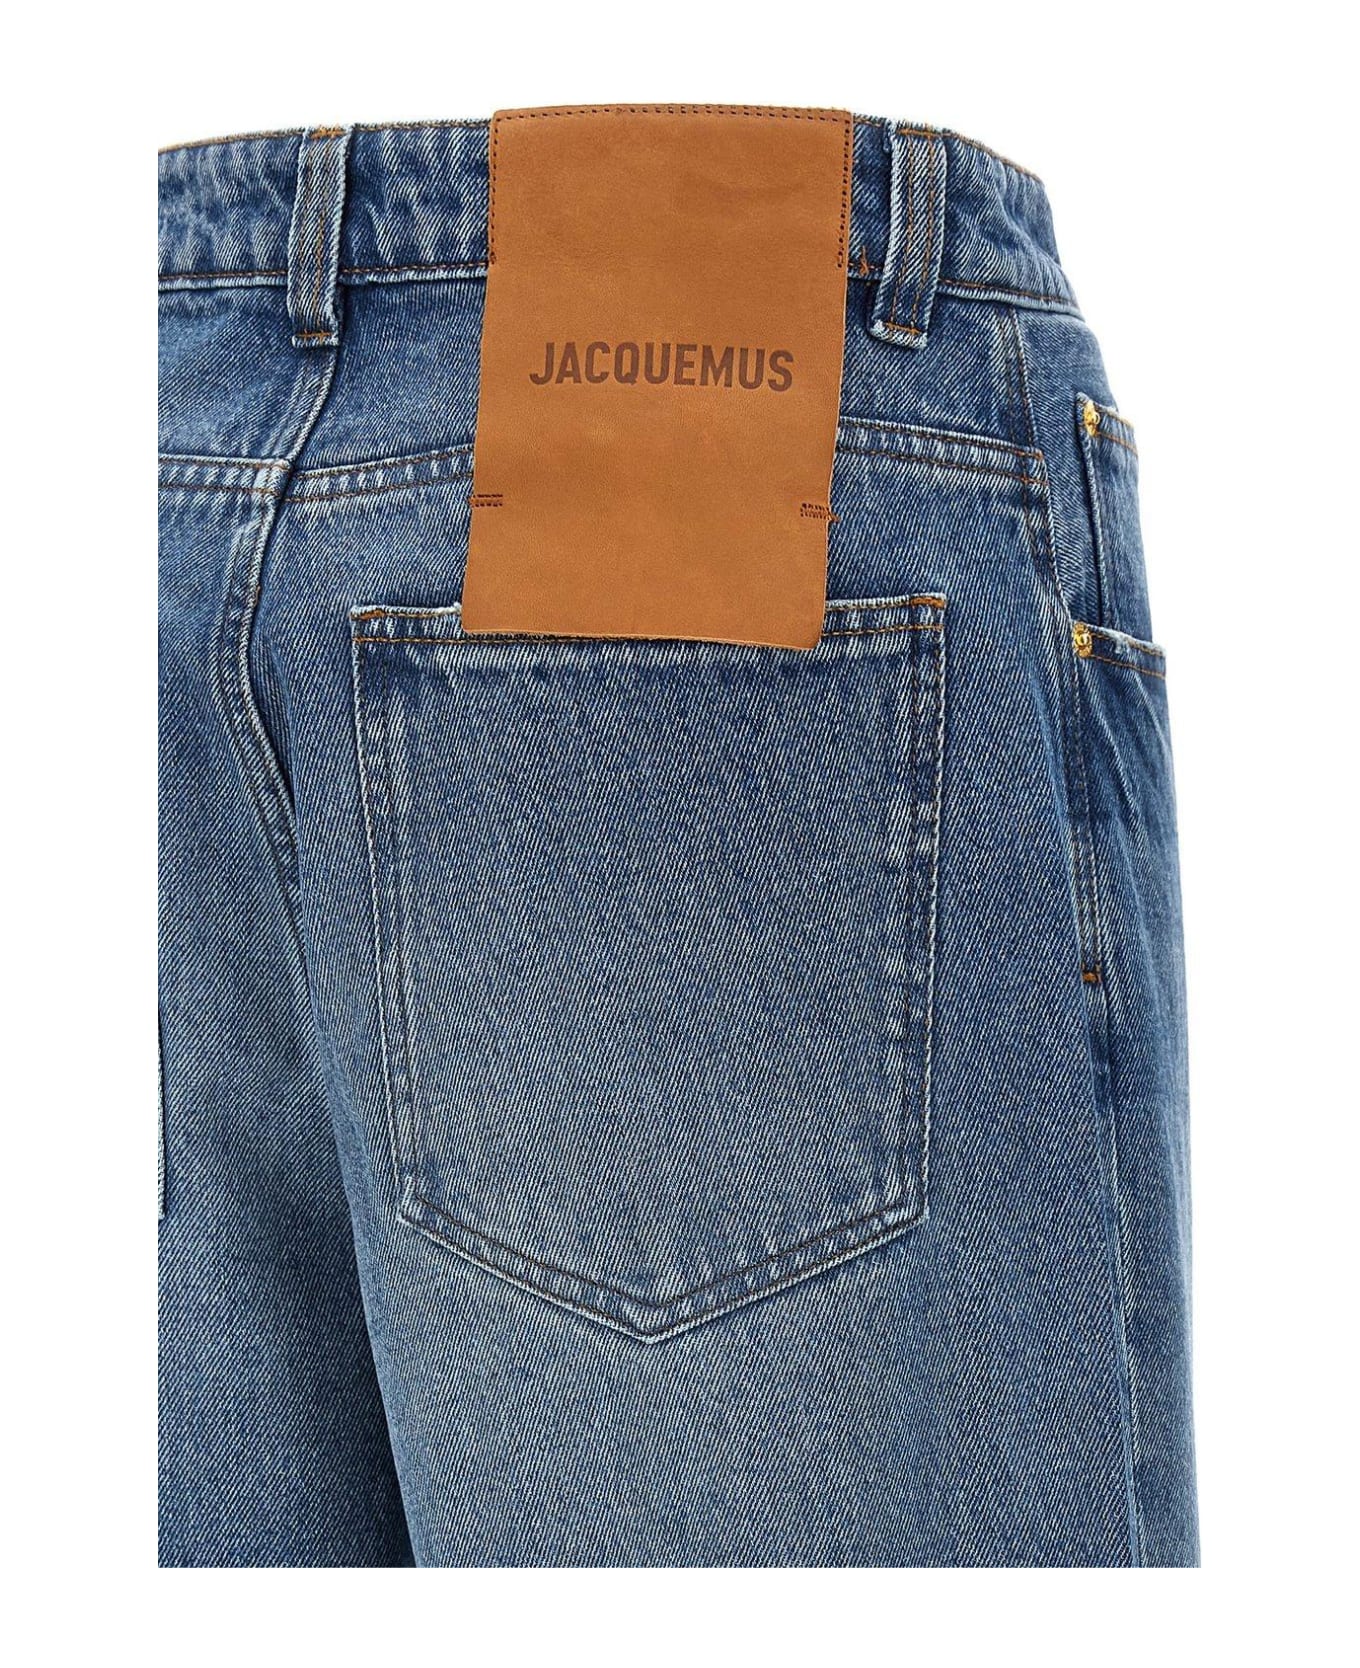 Jacquemus Le De-nimes Large Jeans - Blue/tabac 2